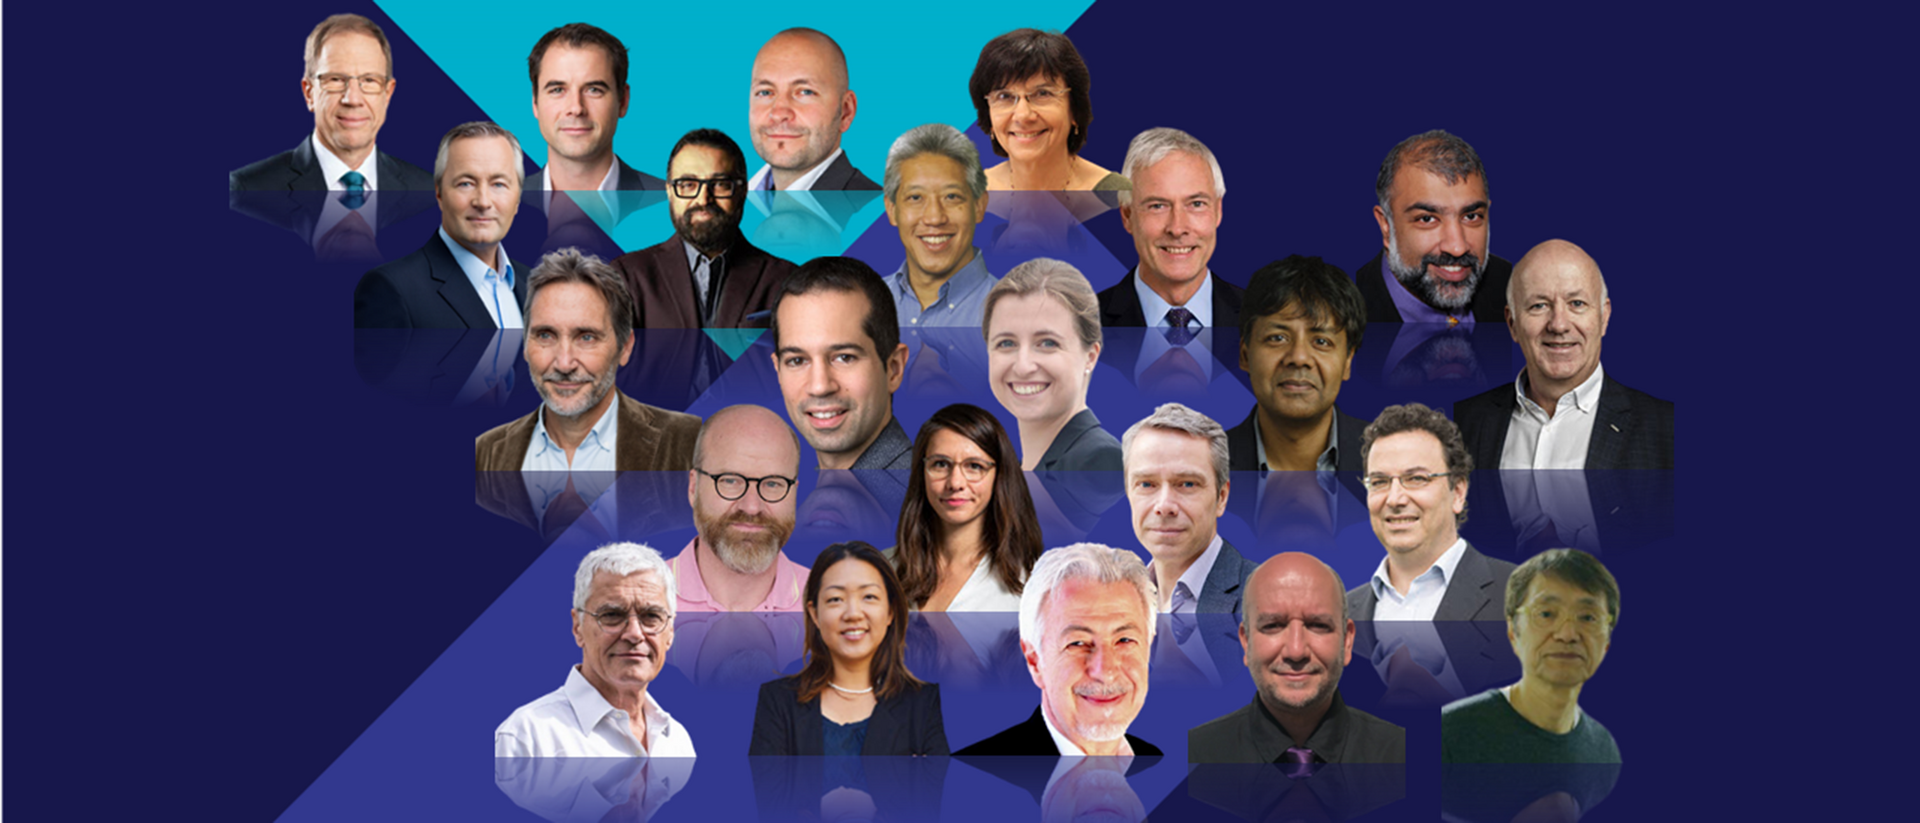 Die 23 Experten aus aller Welt geben Antworten auf die wirtschaftlich und gesellschaftlich dringenden Fragestellungen unserer Zeit, stellen Lösungen und Innovationen vor und diskutieren über ihre Erkenntnisse